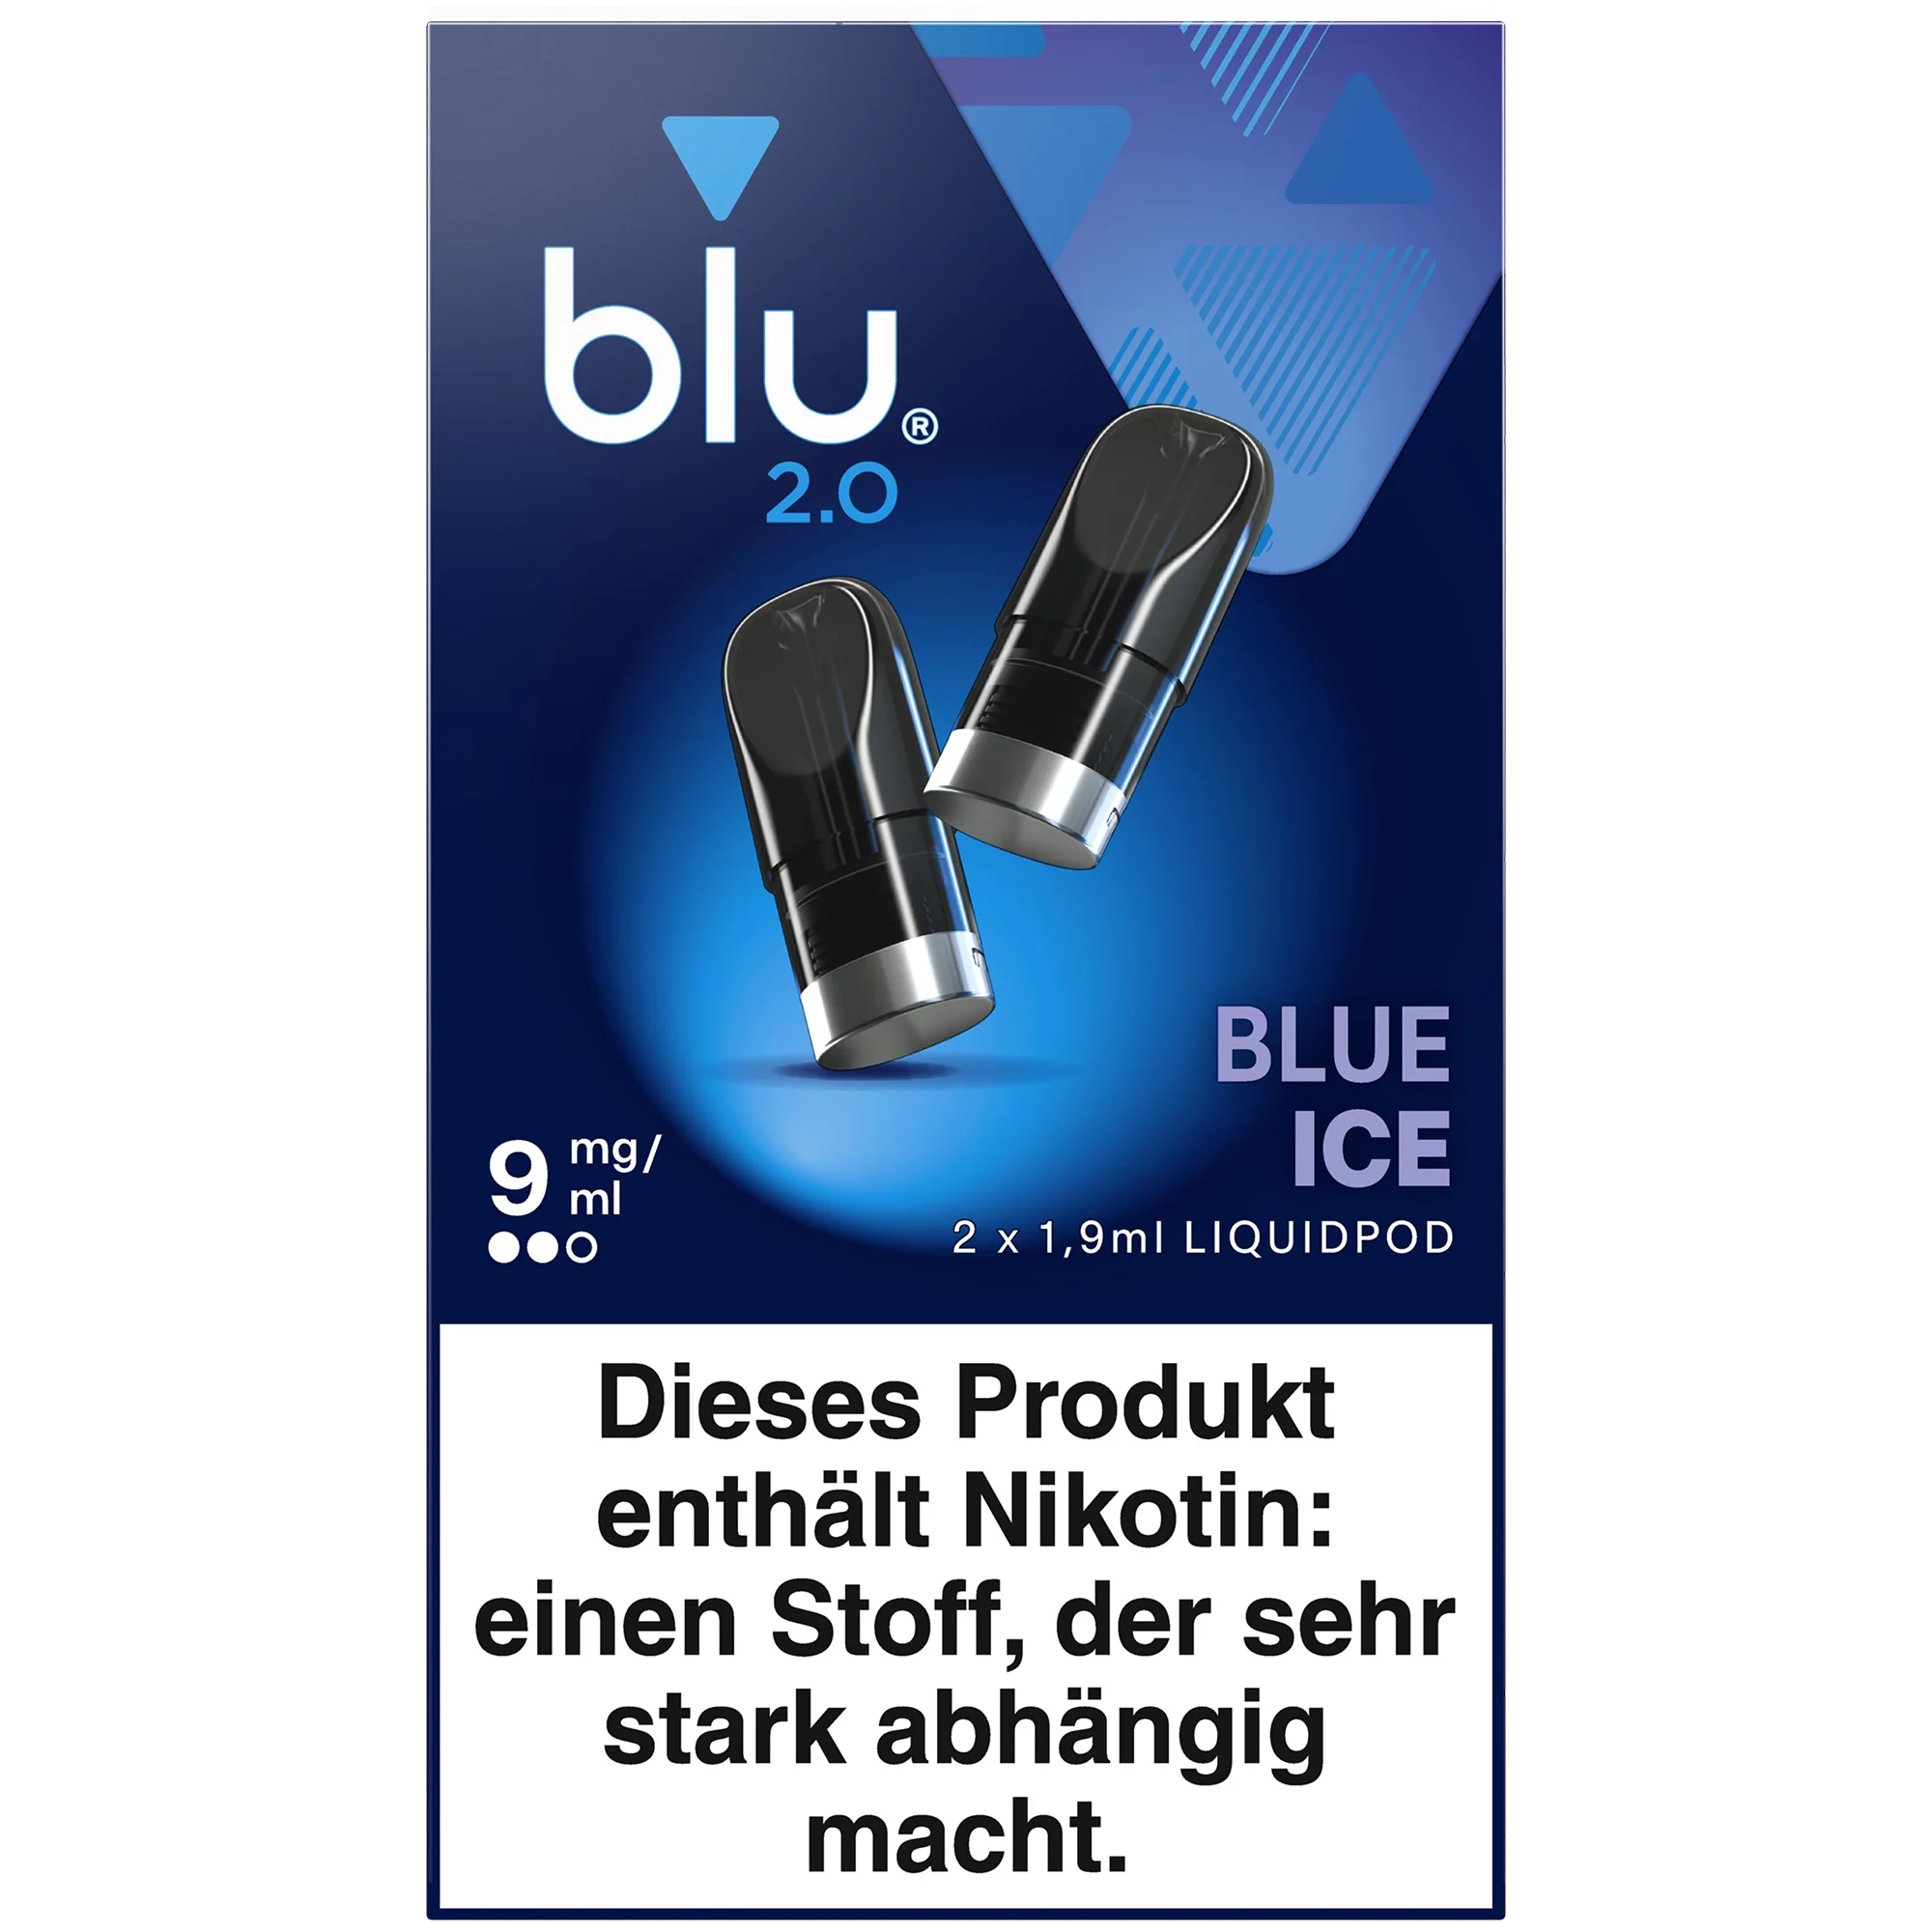 blu 2.0 Liquidpod Blue Ice 9mg/ml